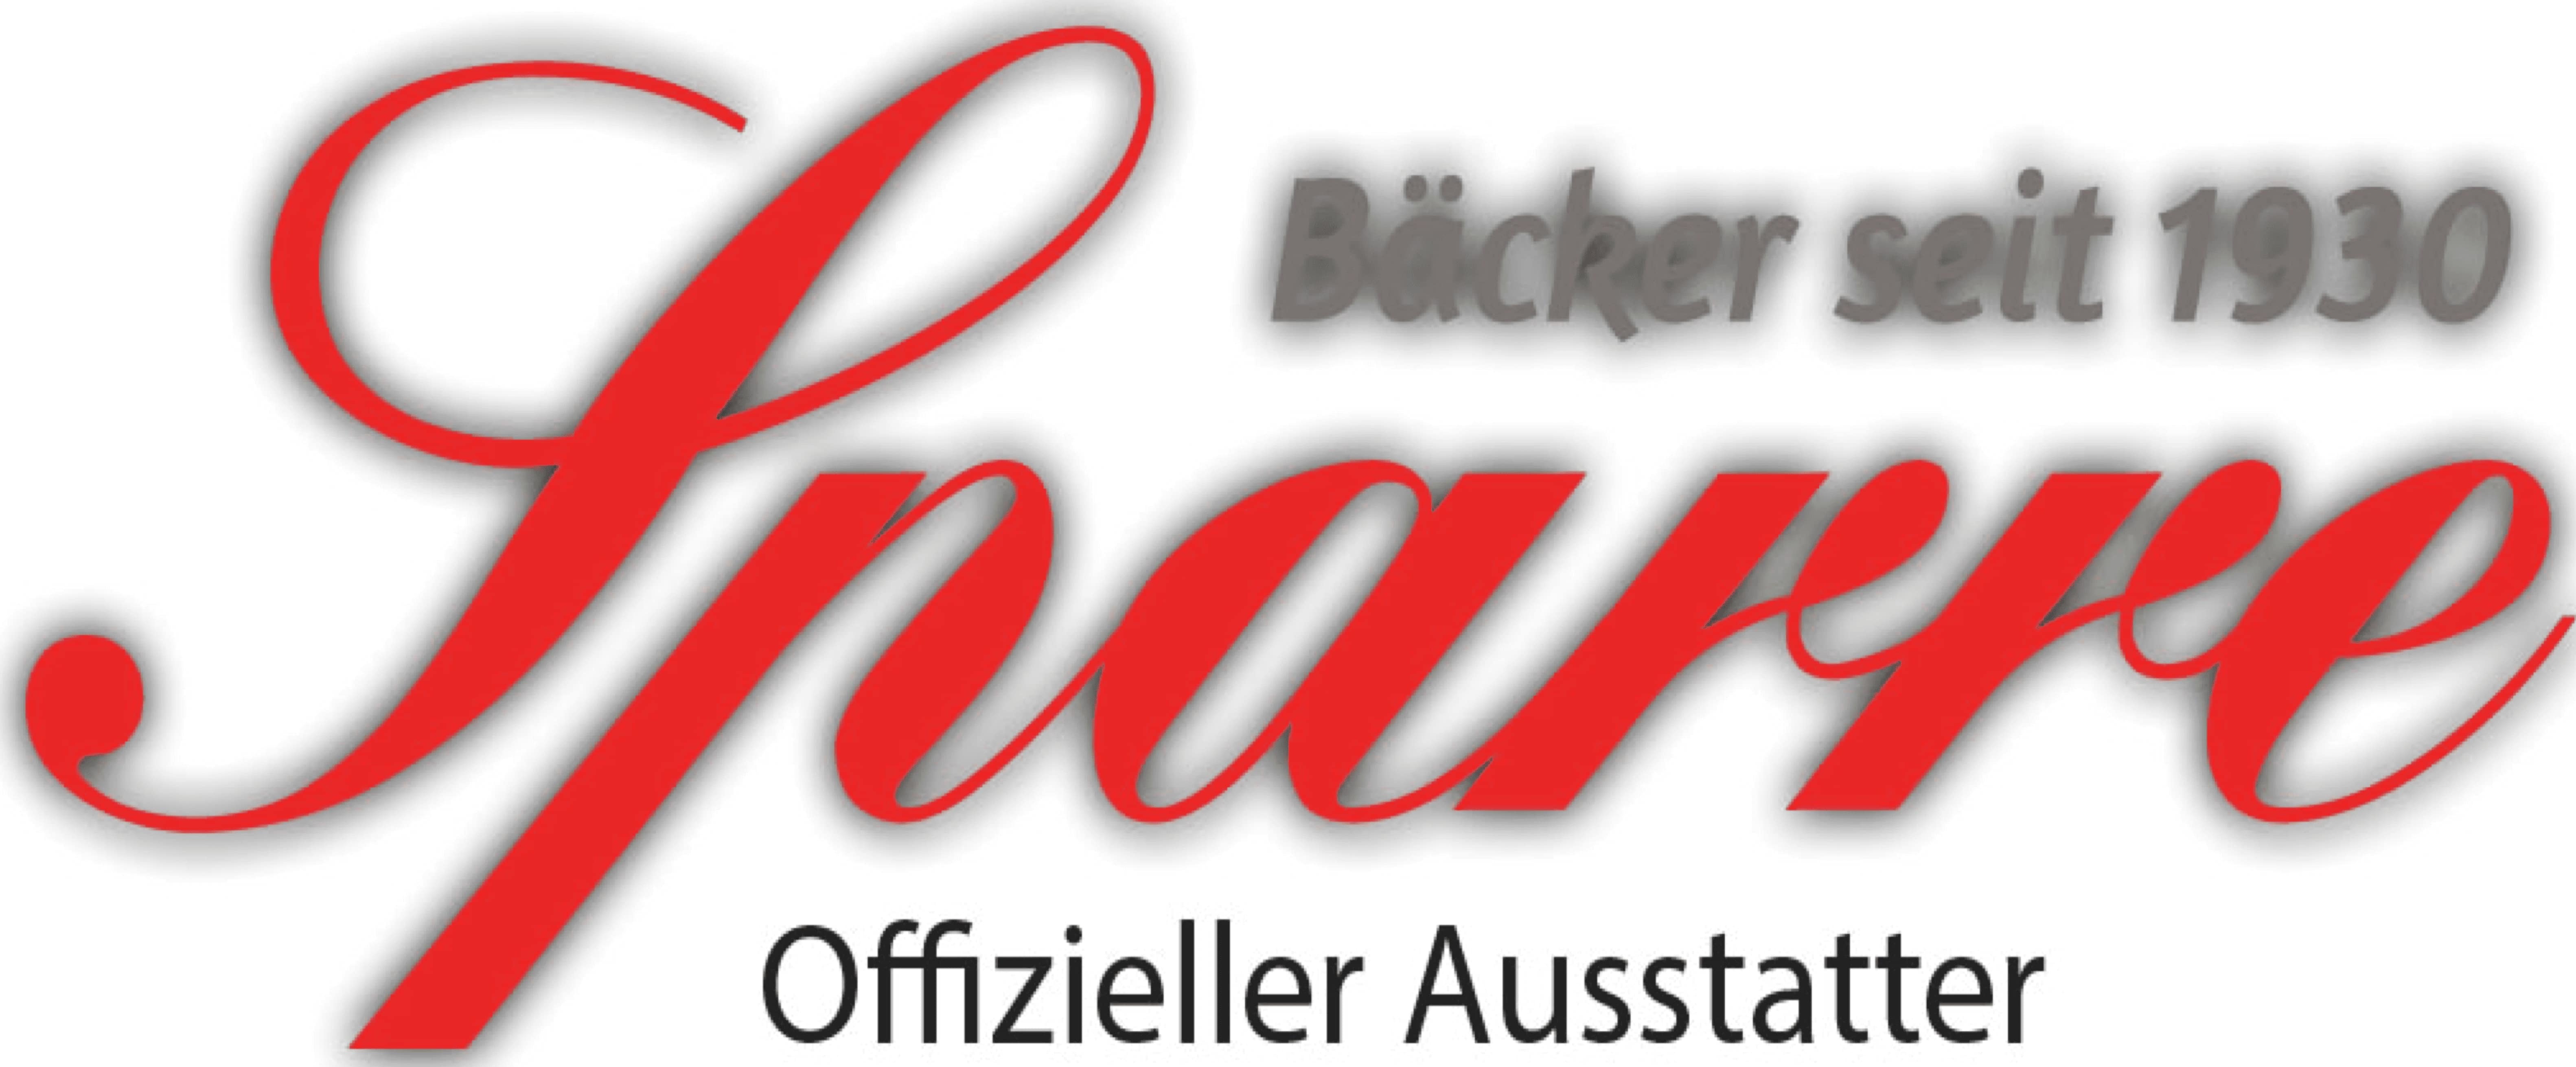 Logo der Bäckerei Sparre aus Rostock - roter Schriftzug